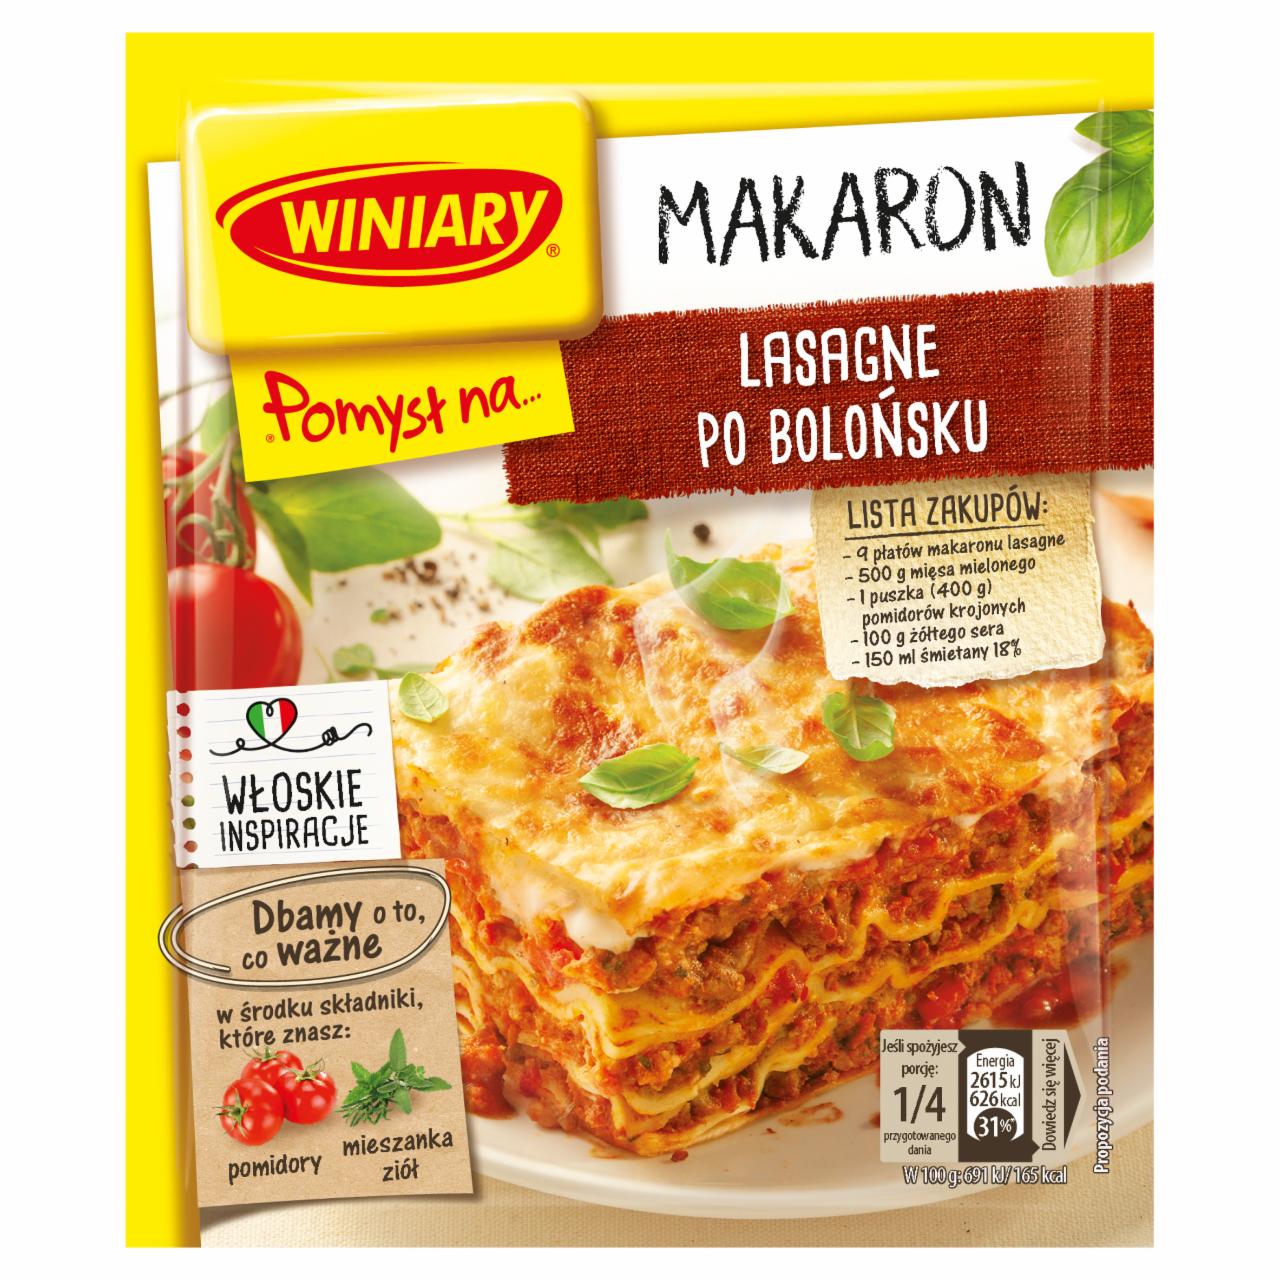 Zdjęcia - Winiary Pomysł na... Makaron lasagne po bolońsku 45 g